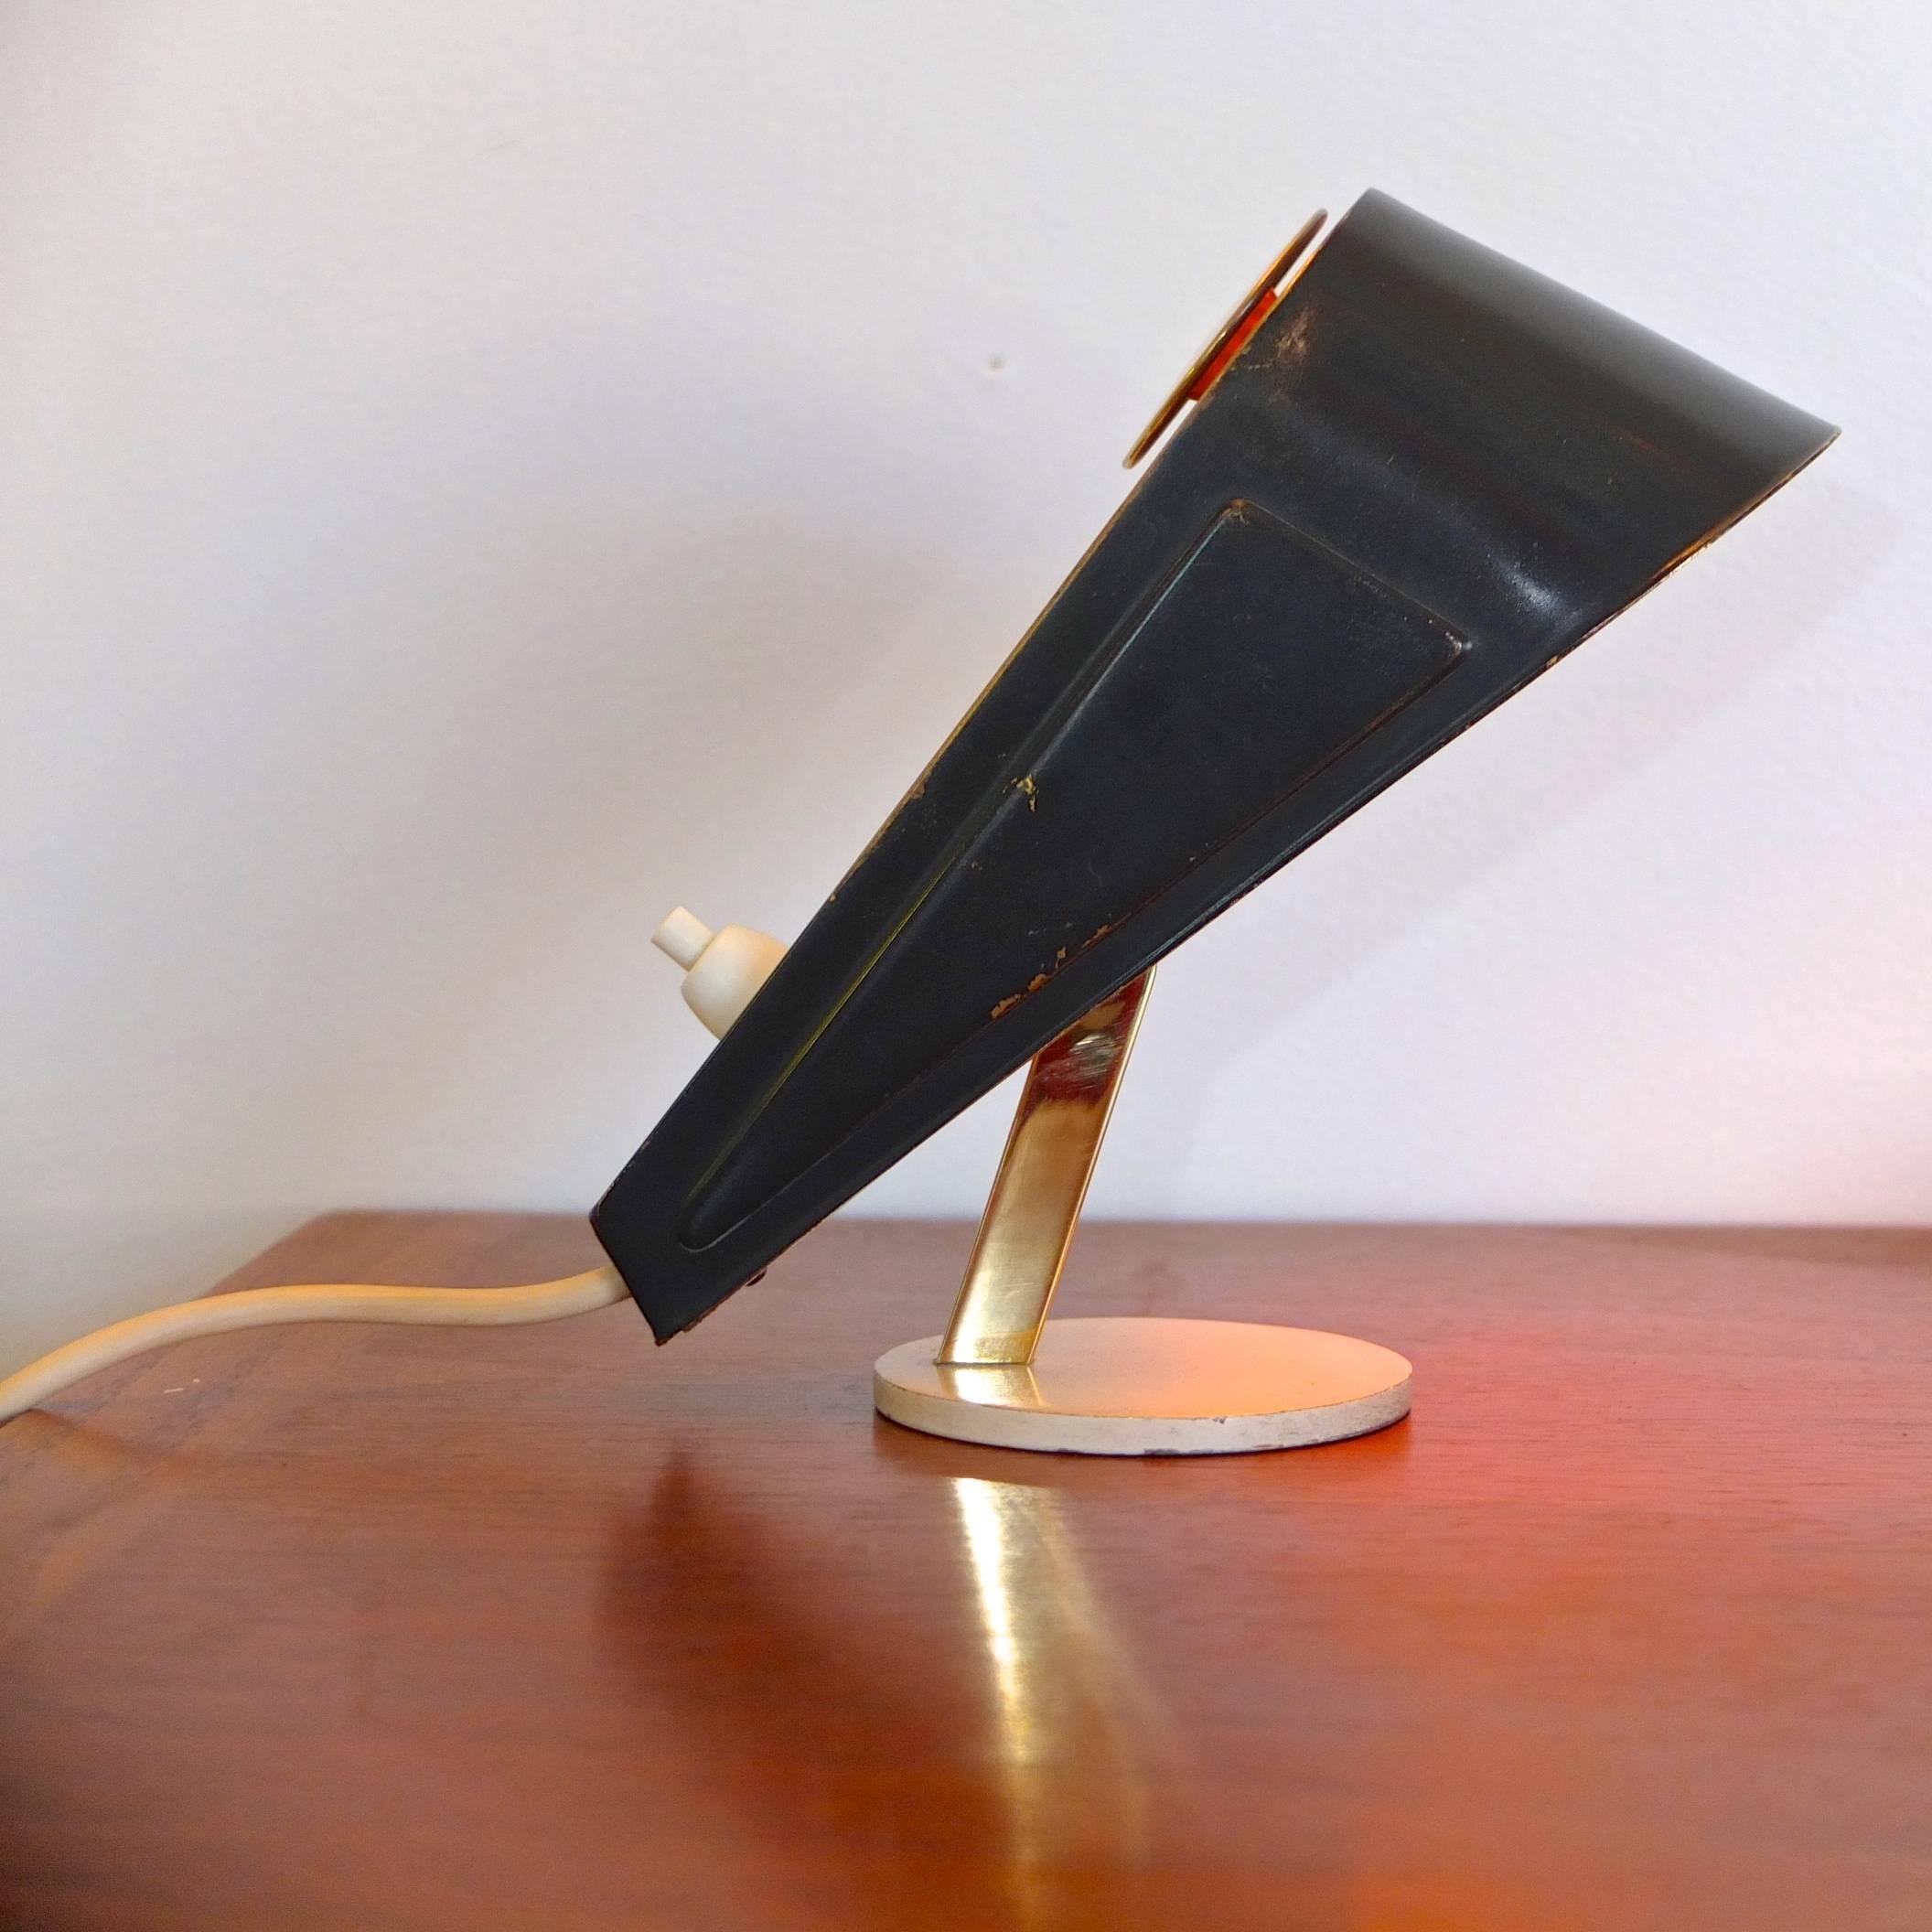 Gelenkige, zierliche Schreibtischlampe in Form eines keilförmigen Türstoppers. Emaillierter Messingschirm auf Messingstiel auf rundem, emailliertem Metallsockel. Für eine E14-Kandelaber-Glühbirne geeignet. Schweres weißes Kabel mit zweipoligem